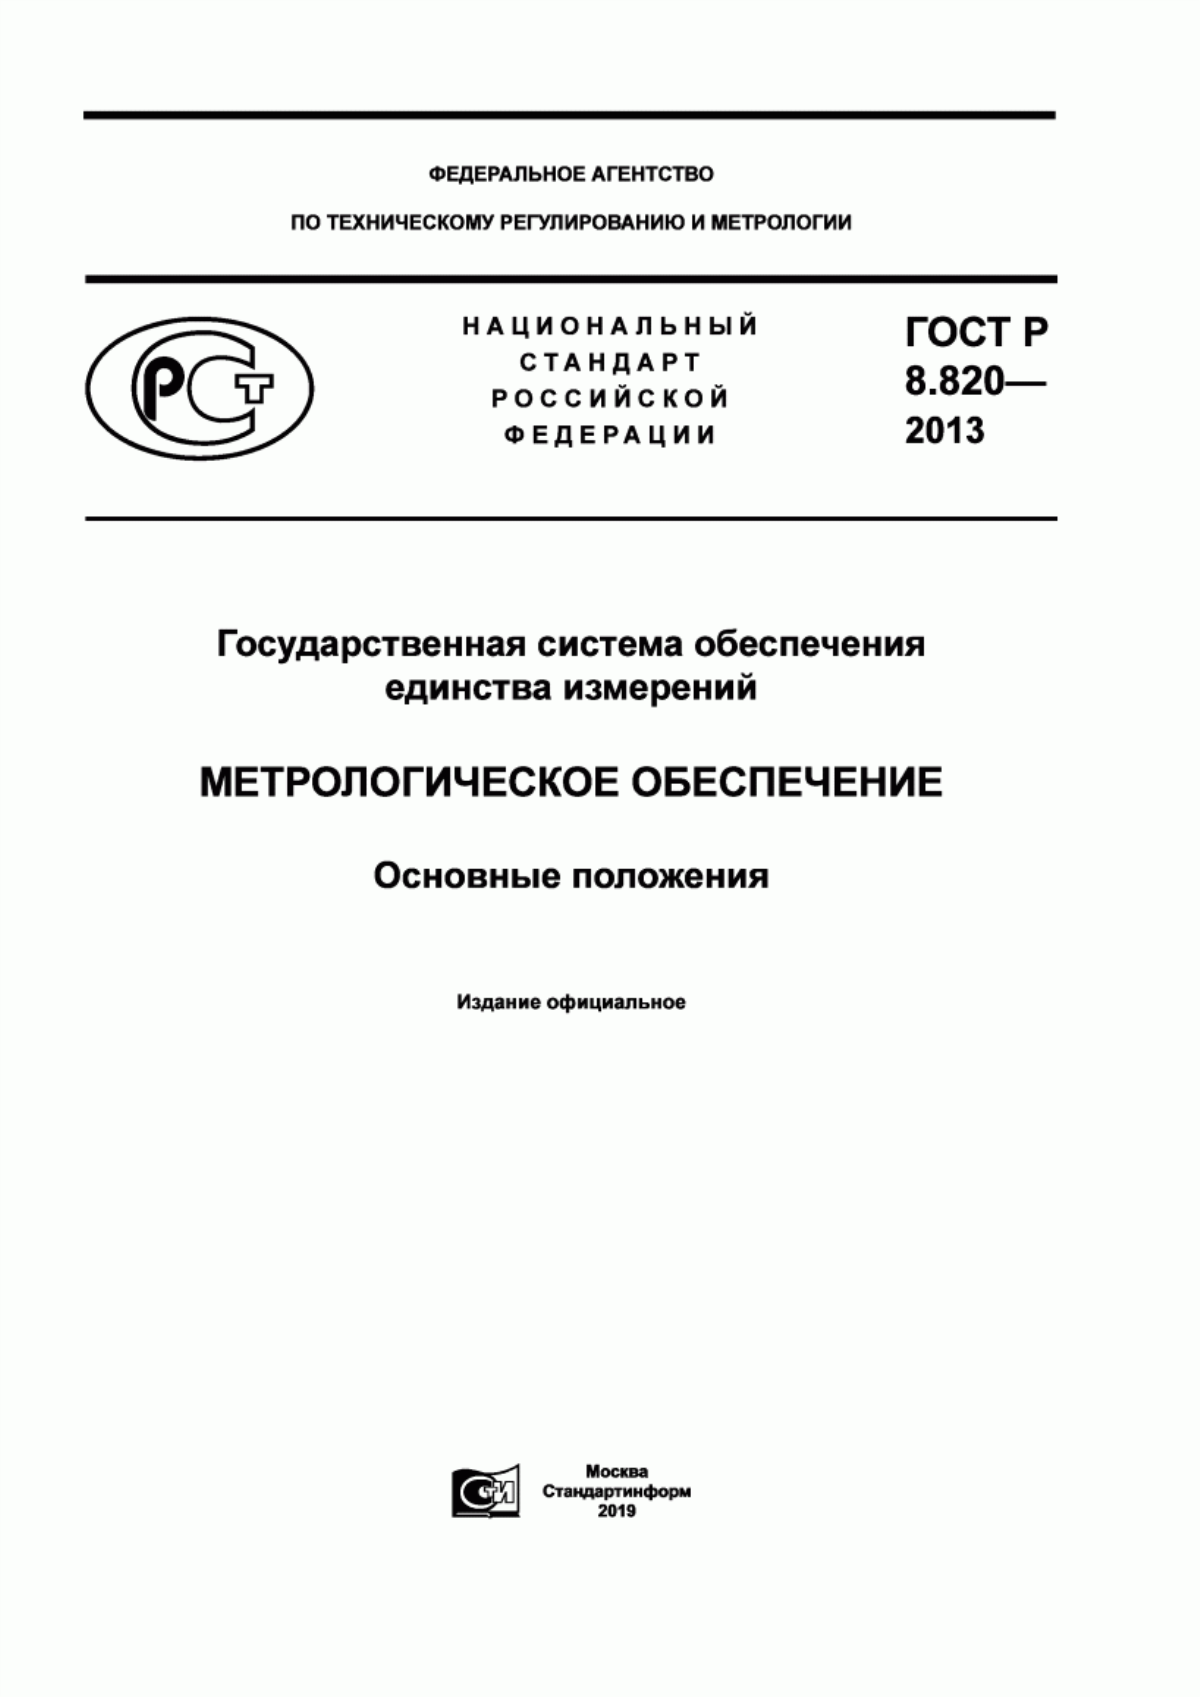 Реферат: Статьи о состоянии разработки федеральных норм и правил в области использования атомной энергии